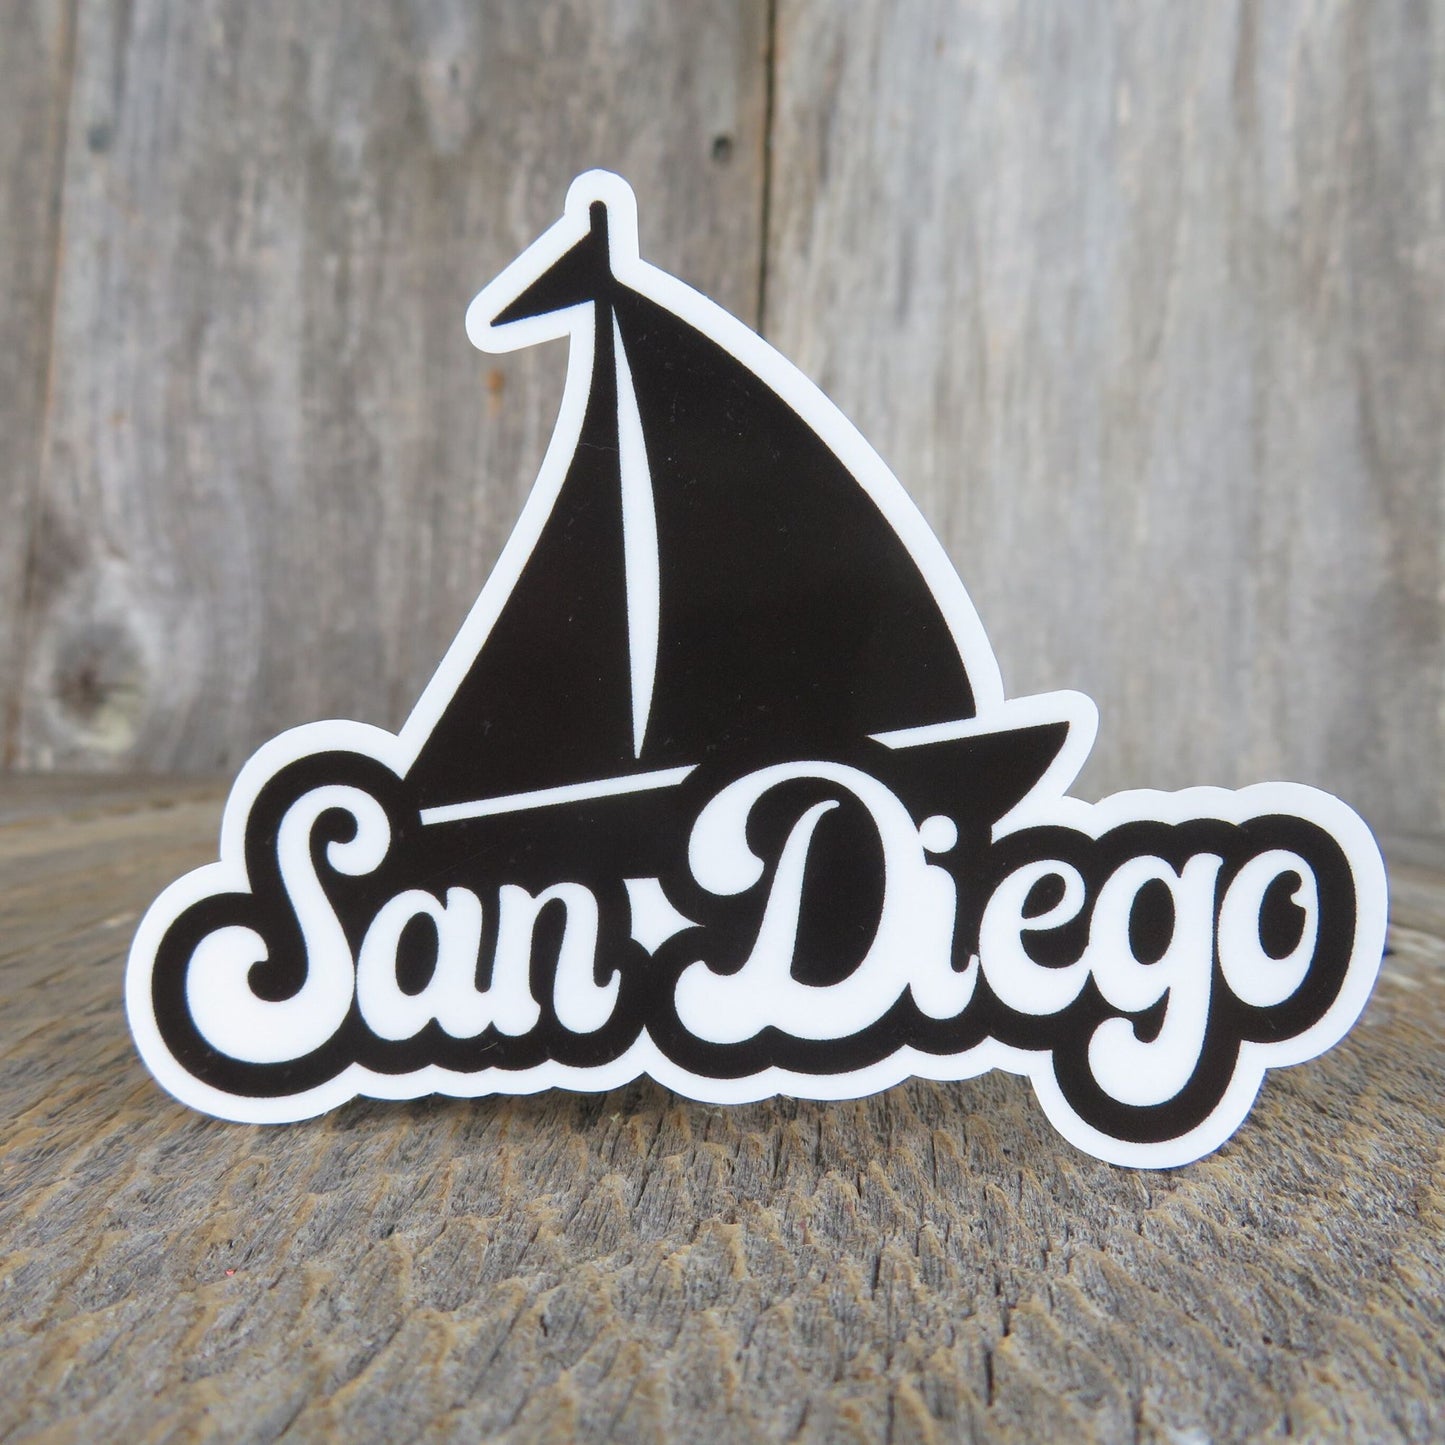 San Diego Black Sailboat Sticker California  Souvenir Retro Bubble Letters